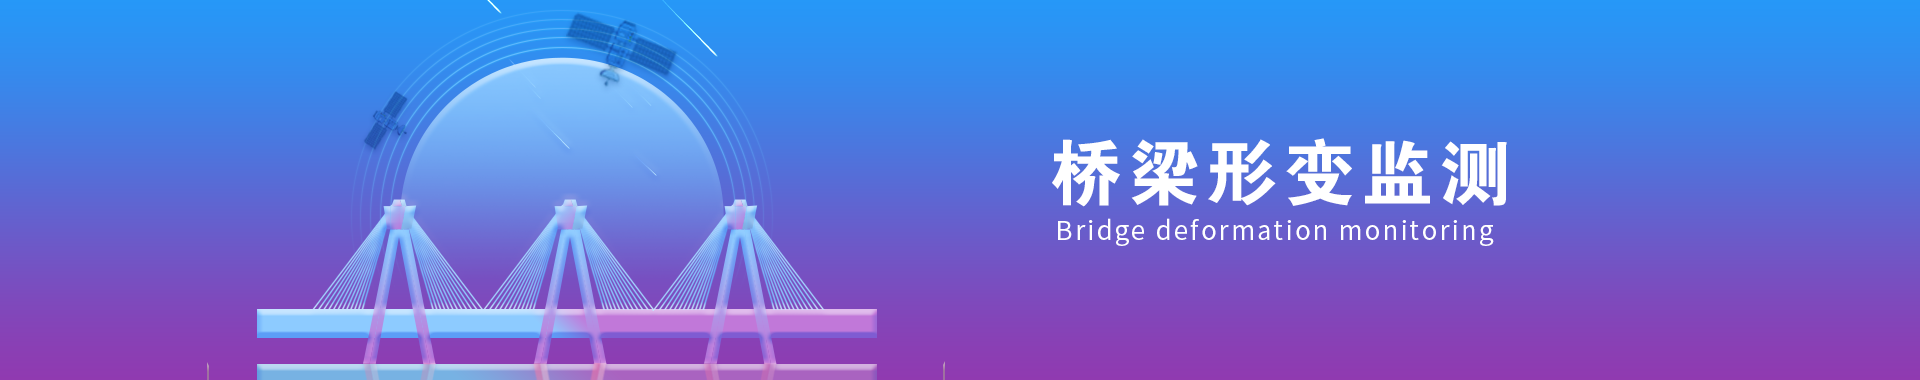 桥梁